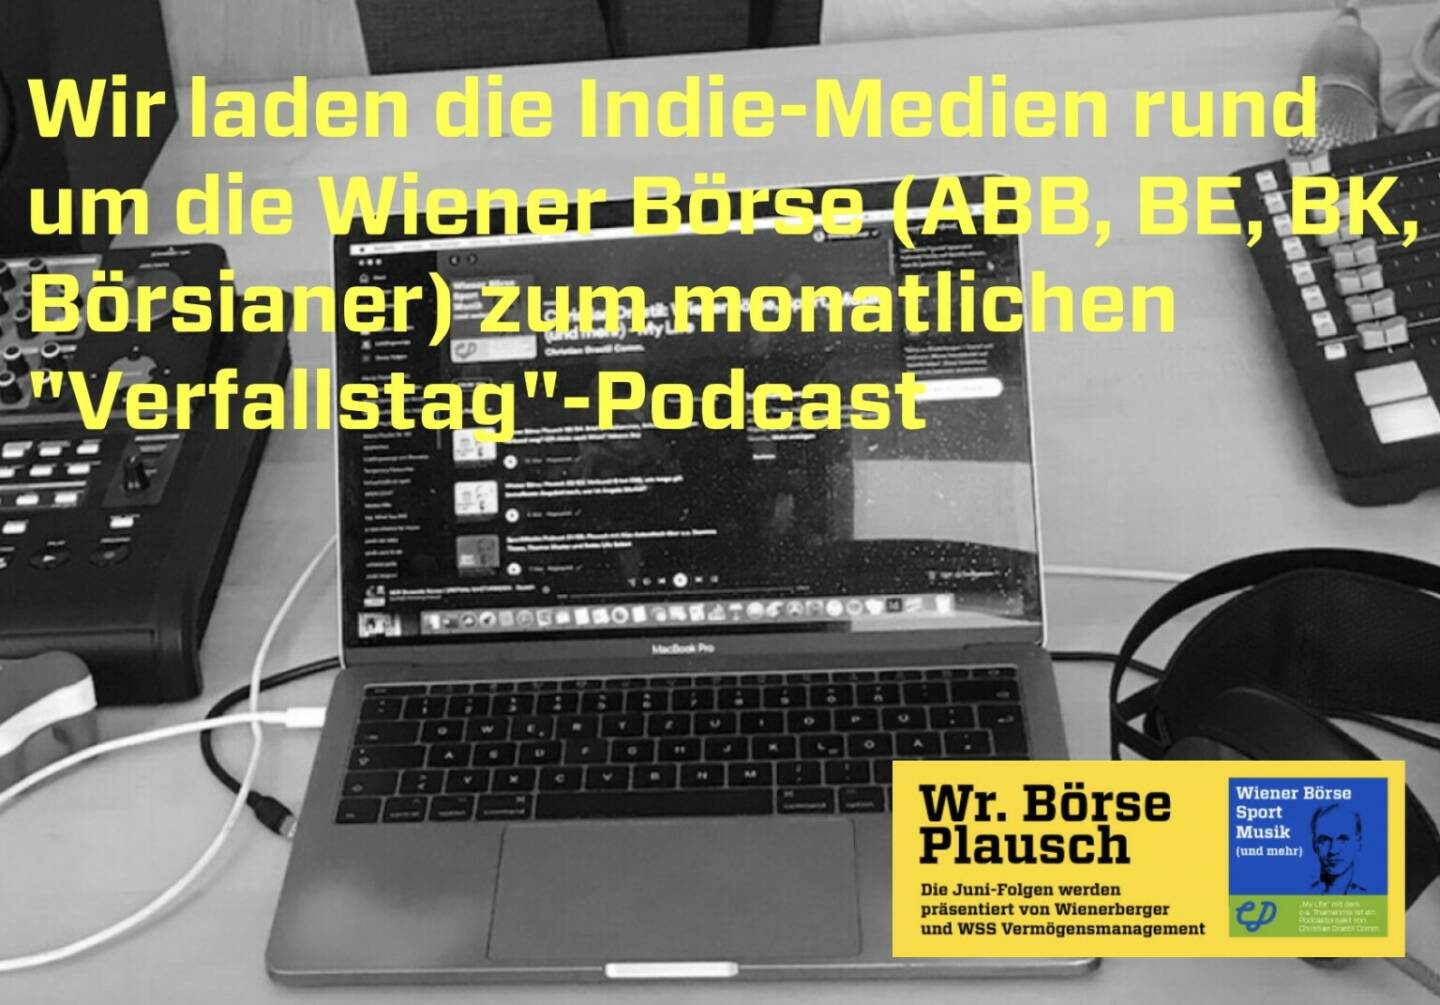 Wir laden die Indie-Medien rund um die Wiener Börse (ABB, BE, BK, Börsianer) zum monatlichen Verfallstag-Podcast. Diese Info und mehr in Folge S2/105 der Wiener Börse Pläusche im Rahmen von http://www.christian-drastil.com/podcast .